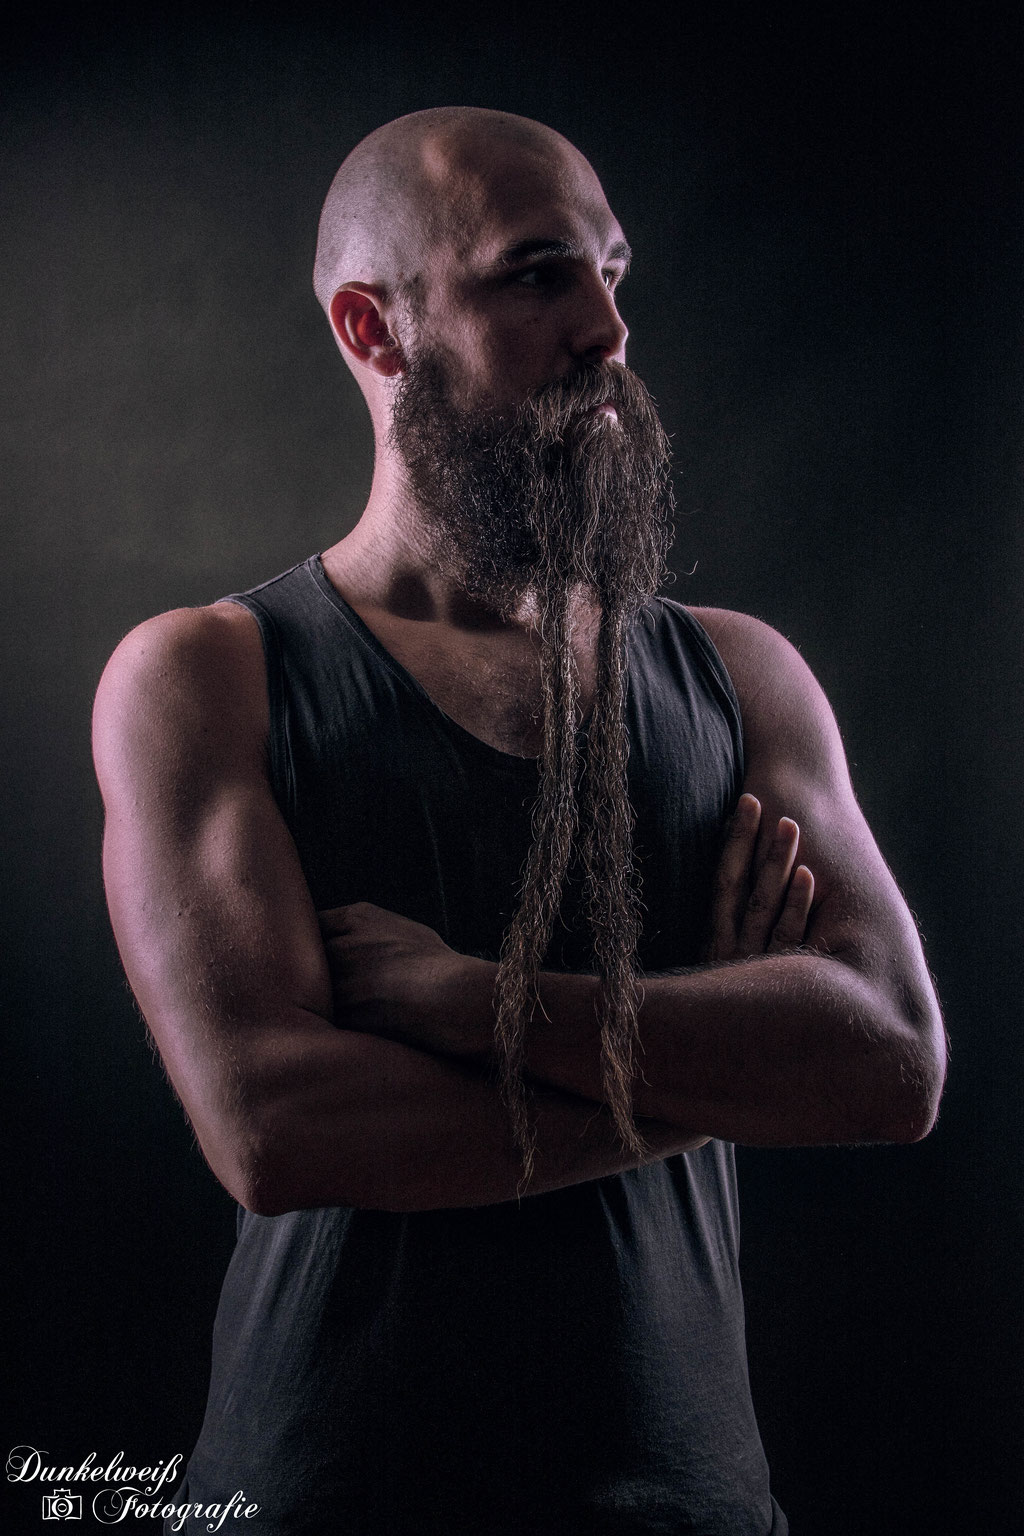 Portrait- Charakterportrait von Mann mit langem Bart im Studio Dunkelweiss-Fotografie